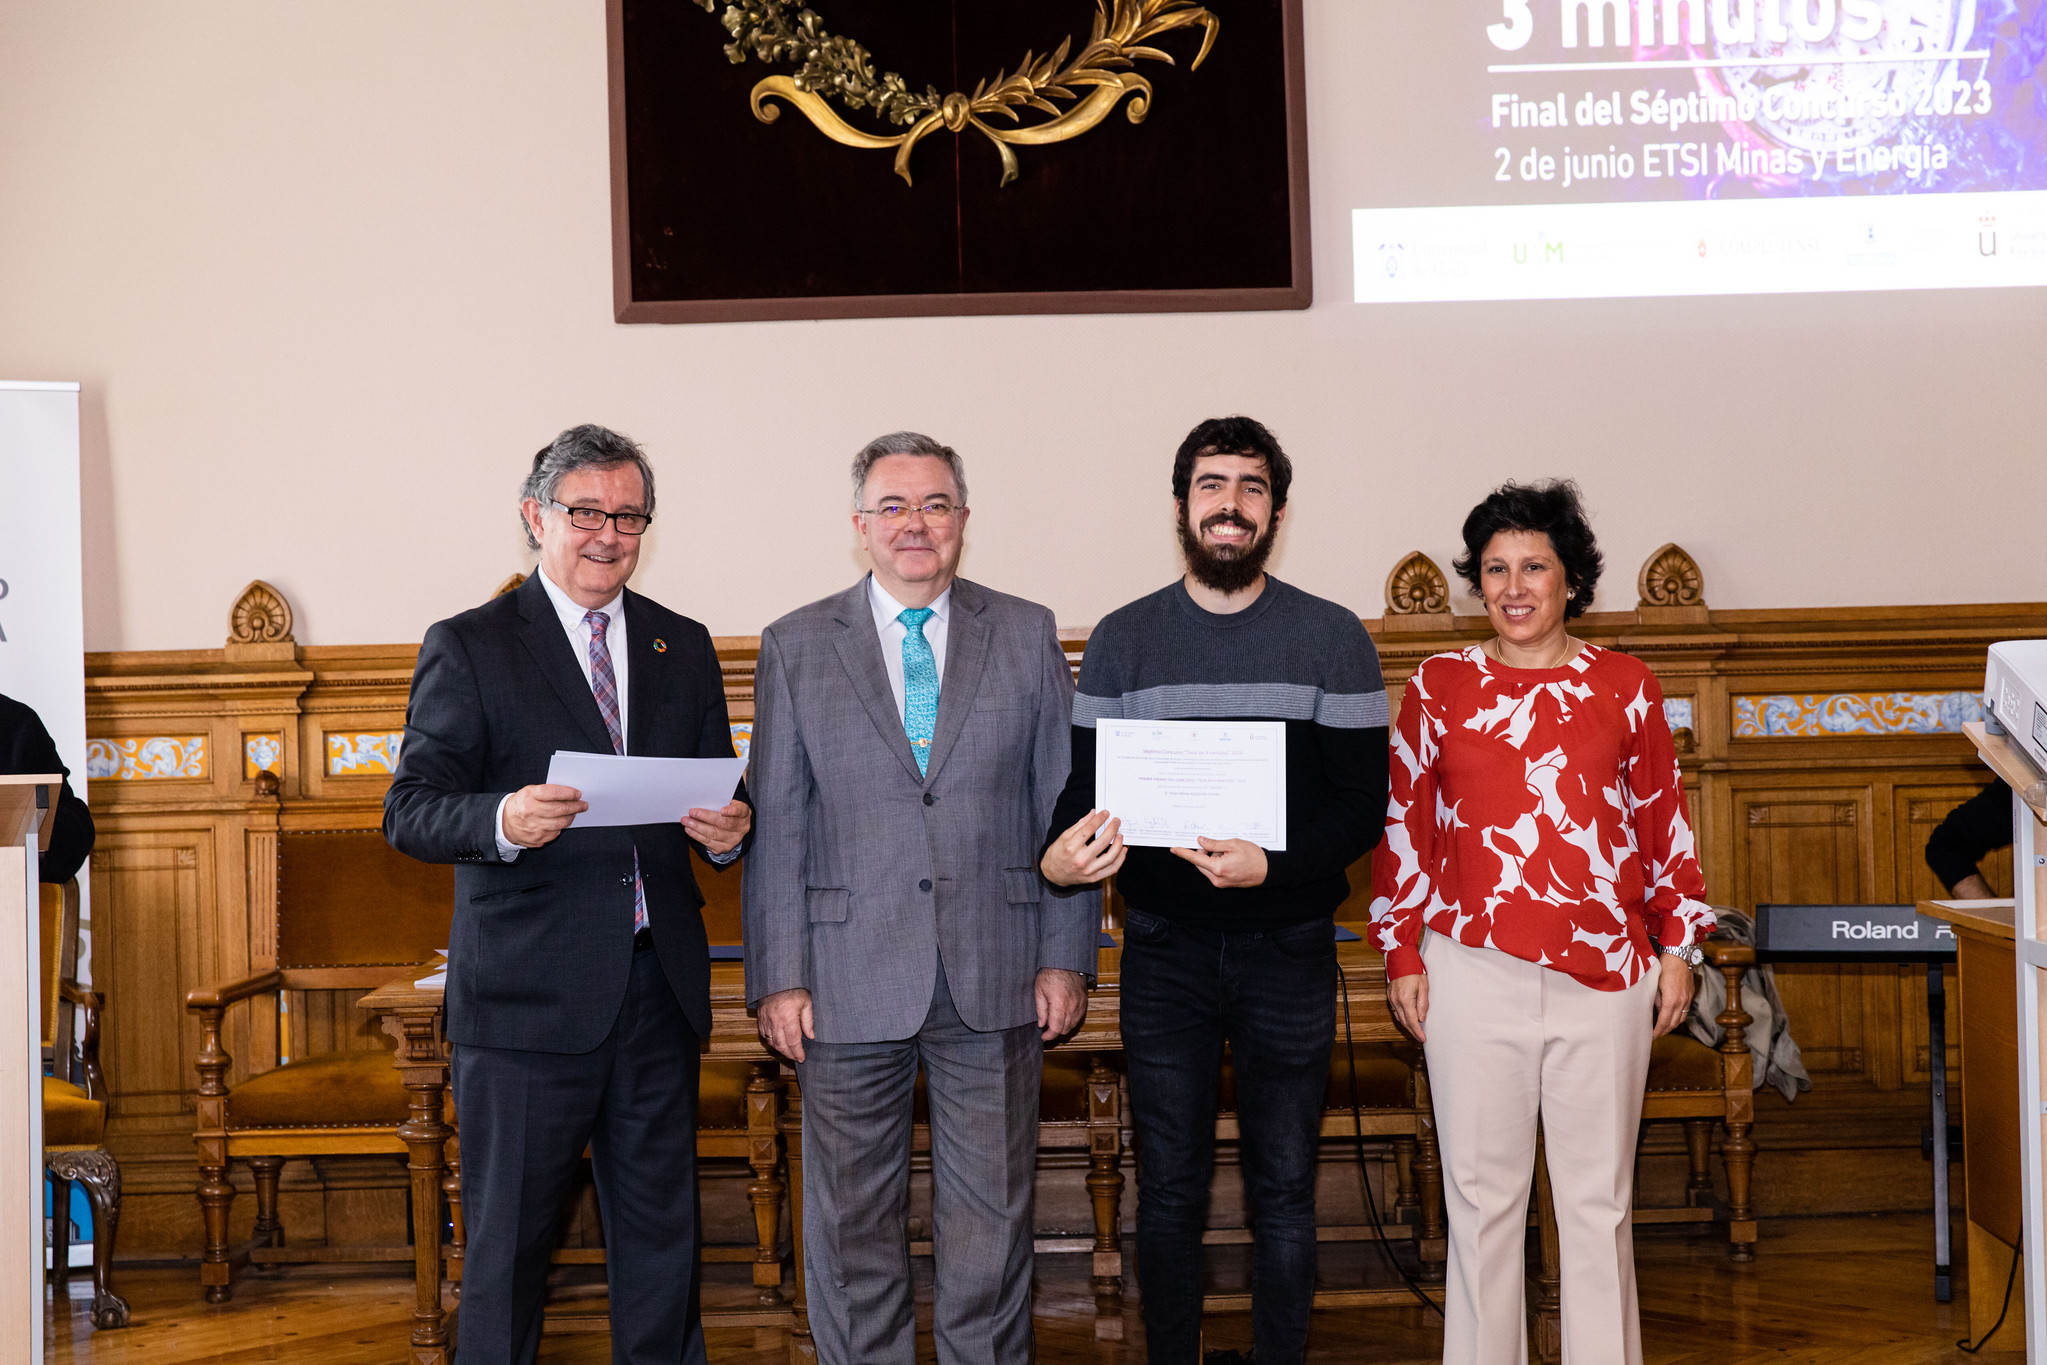 Víctor Gómez-Escalonilla posa con su diploma como ganador del concurso en la modalidad de Ciencias